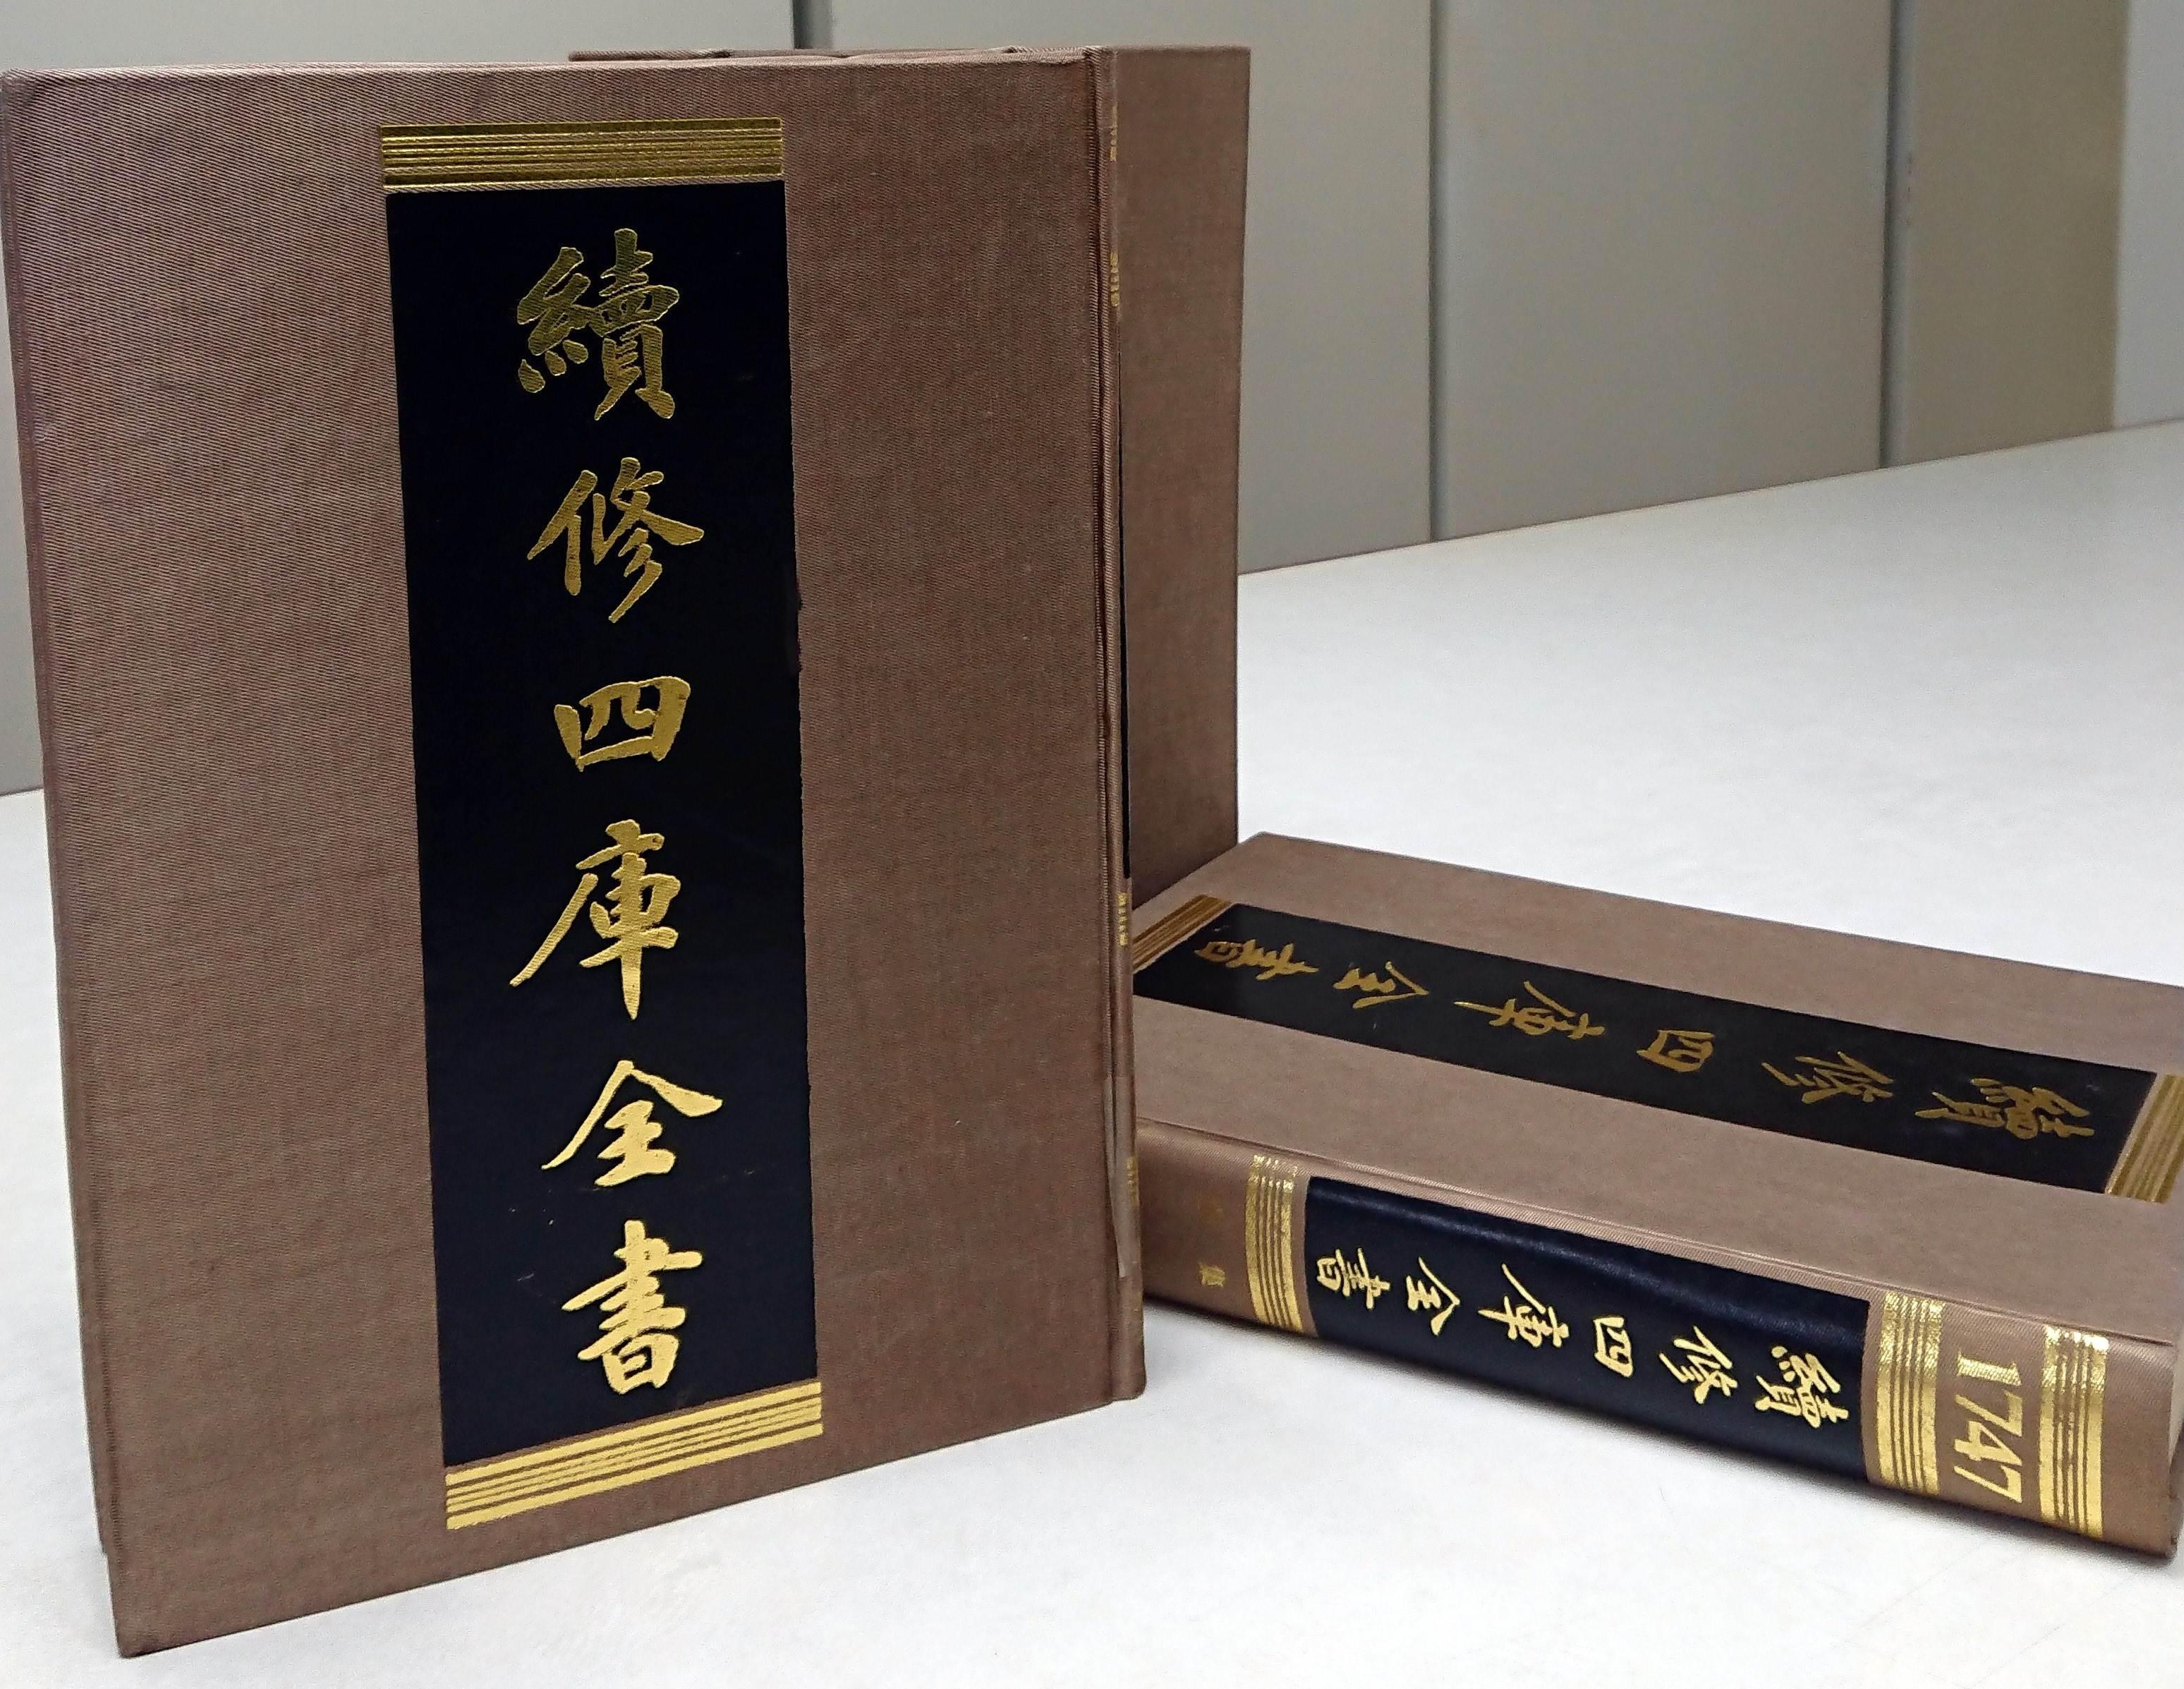 我讀的版本。上海古籍出版社，清道光二年的寶寧堂刻本。